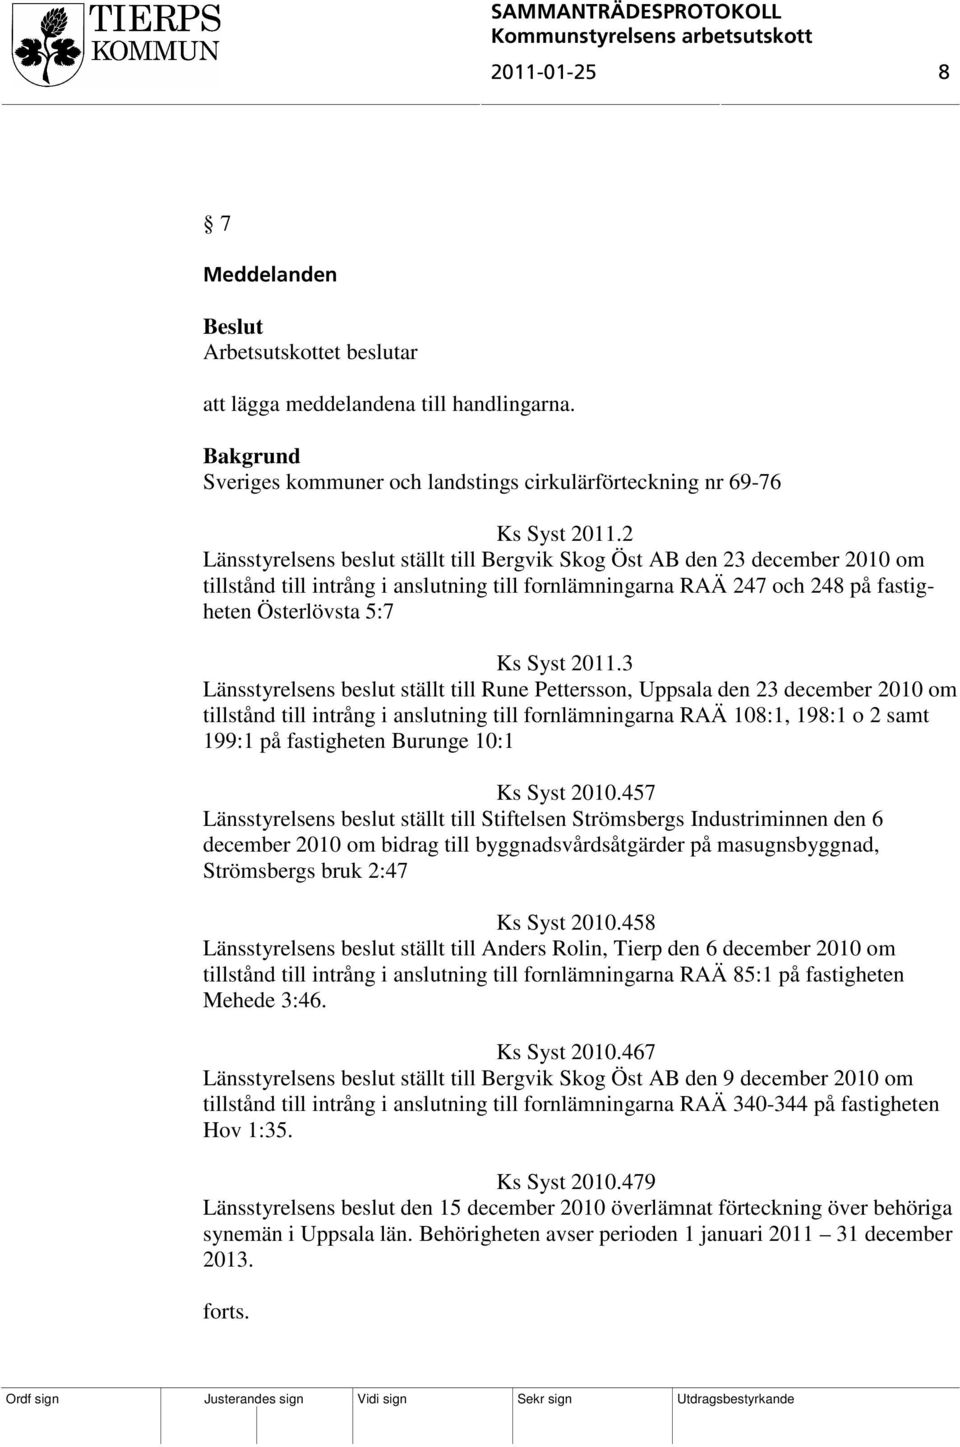 3 Länsstyrelsens beslut ställt till Rune Pettersson, Uppsala den 23 december 2010 om tillstånd till intrång i anslutning till fornlämningarna RAÄ 108:1, 198:1 o 2 samt 199:1 på fastigheten Burunge